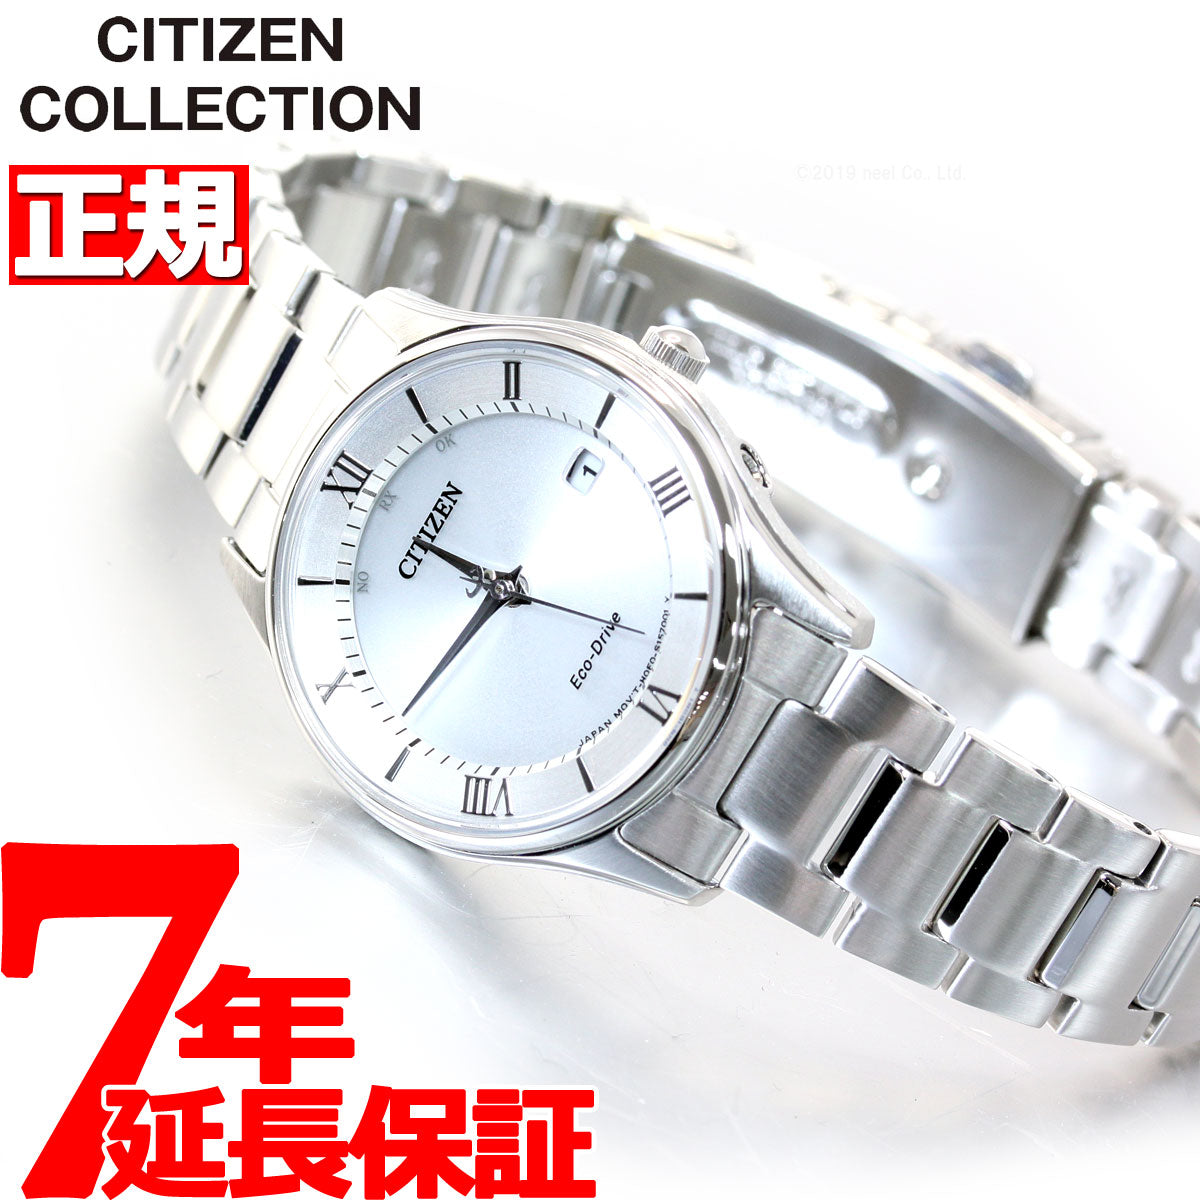 シチズンコレクション CITIZEN COLLECTION エコドライブ ソーラー 電波時計 腕時計 レディース 薄型シリーズ ES0000-79A